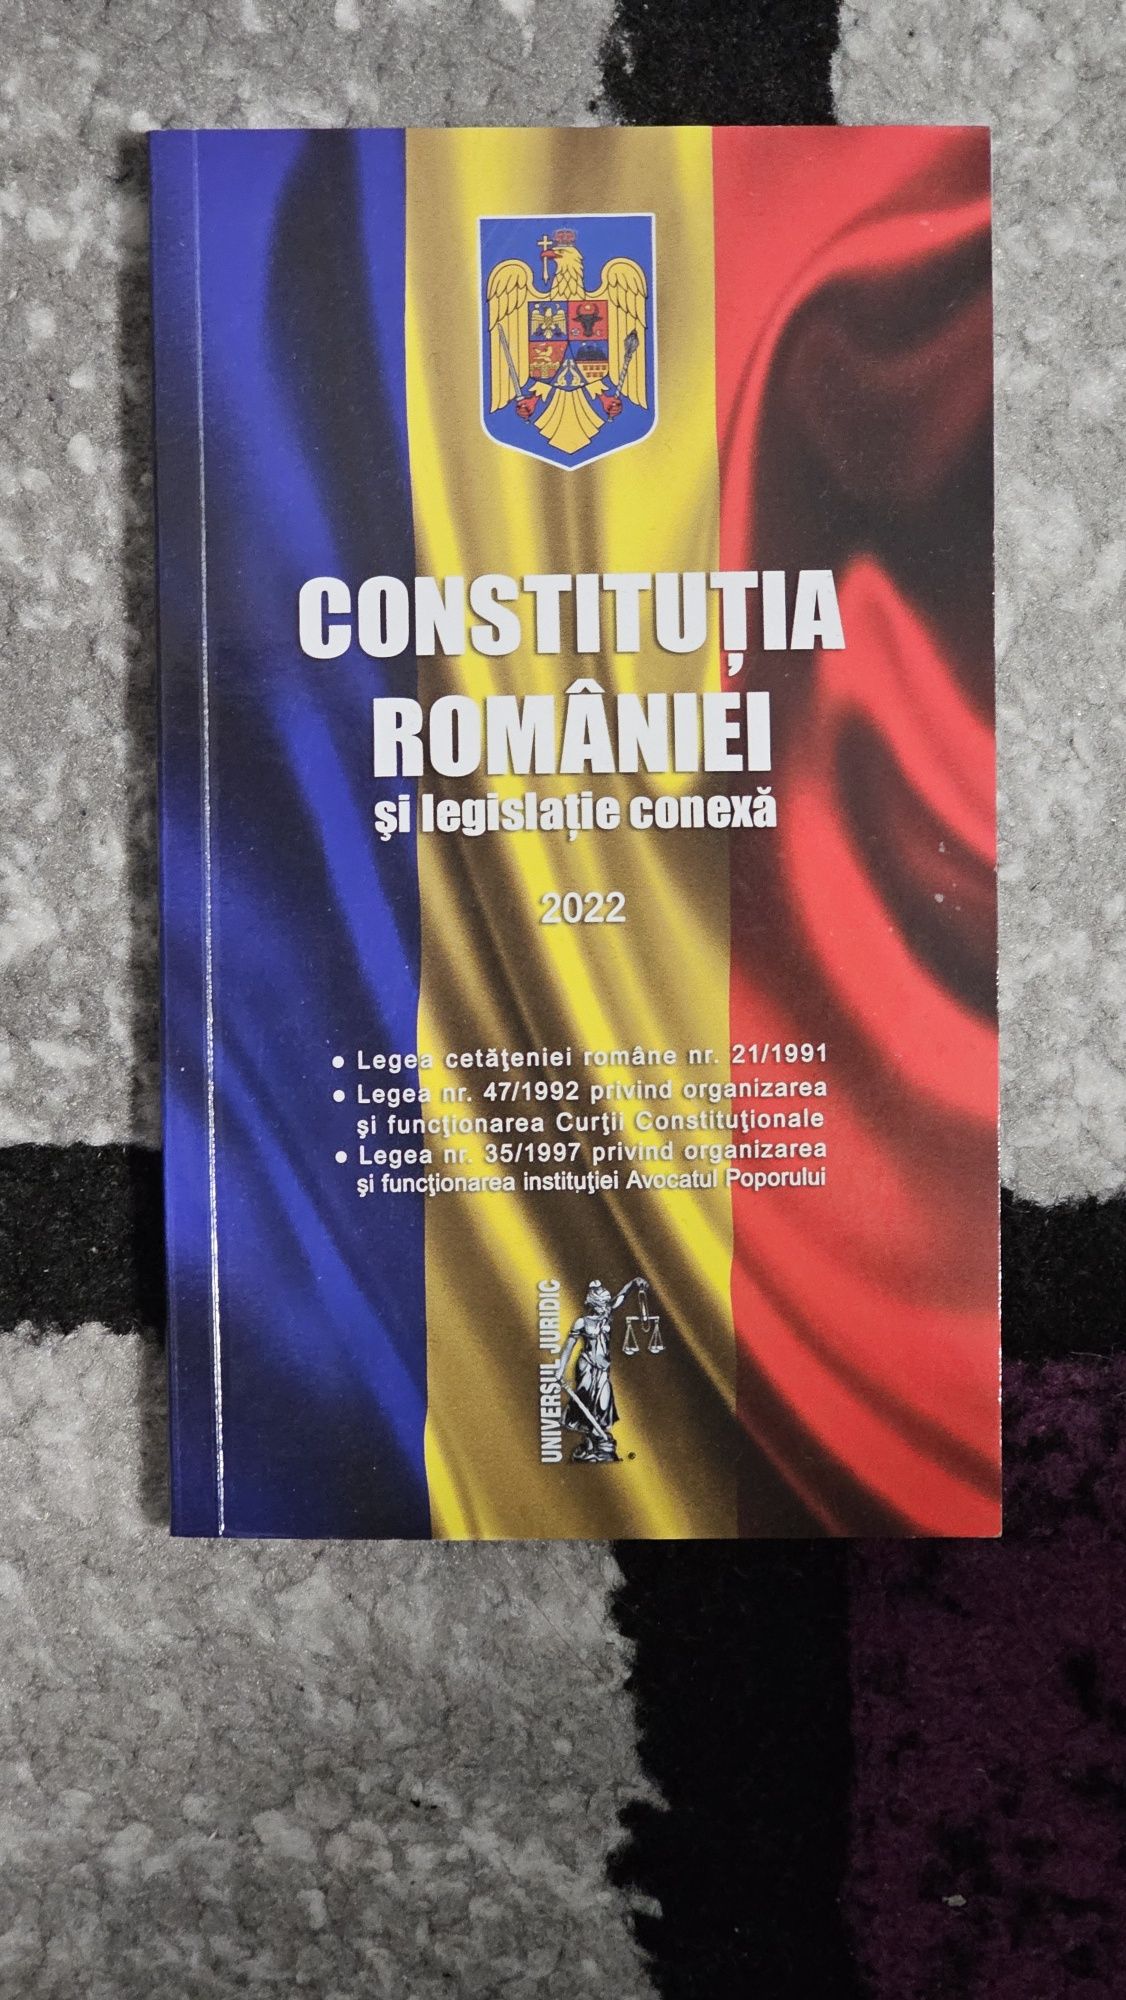 Constitutia Romaniei 2022